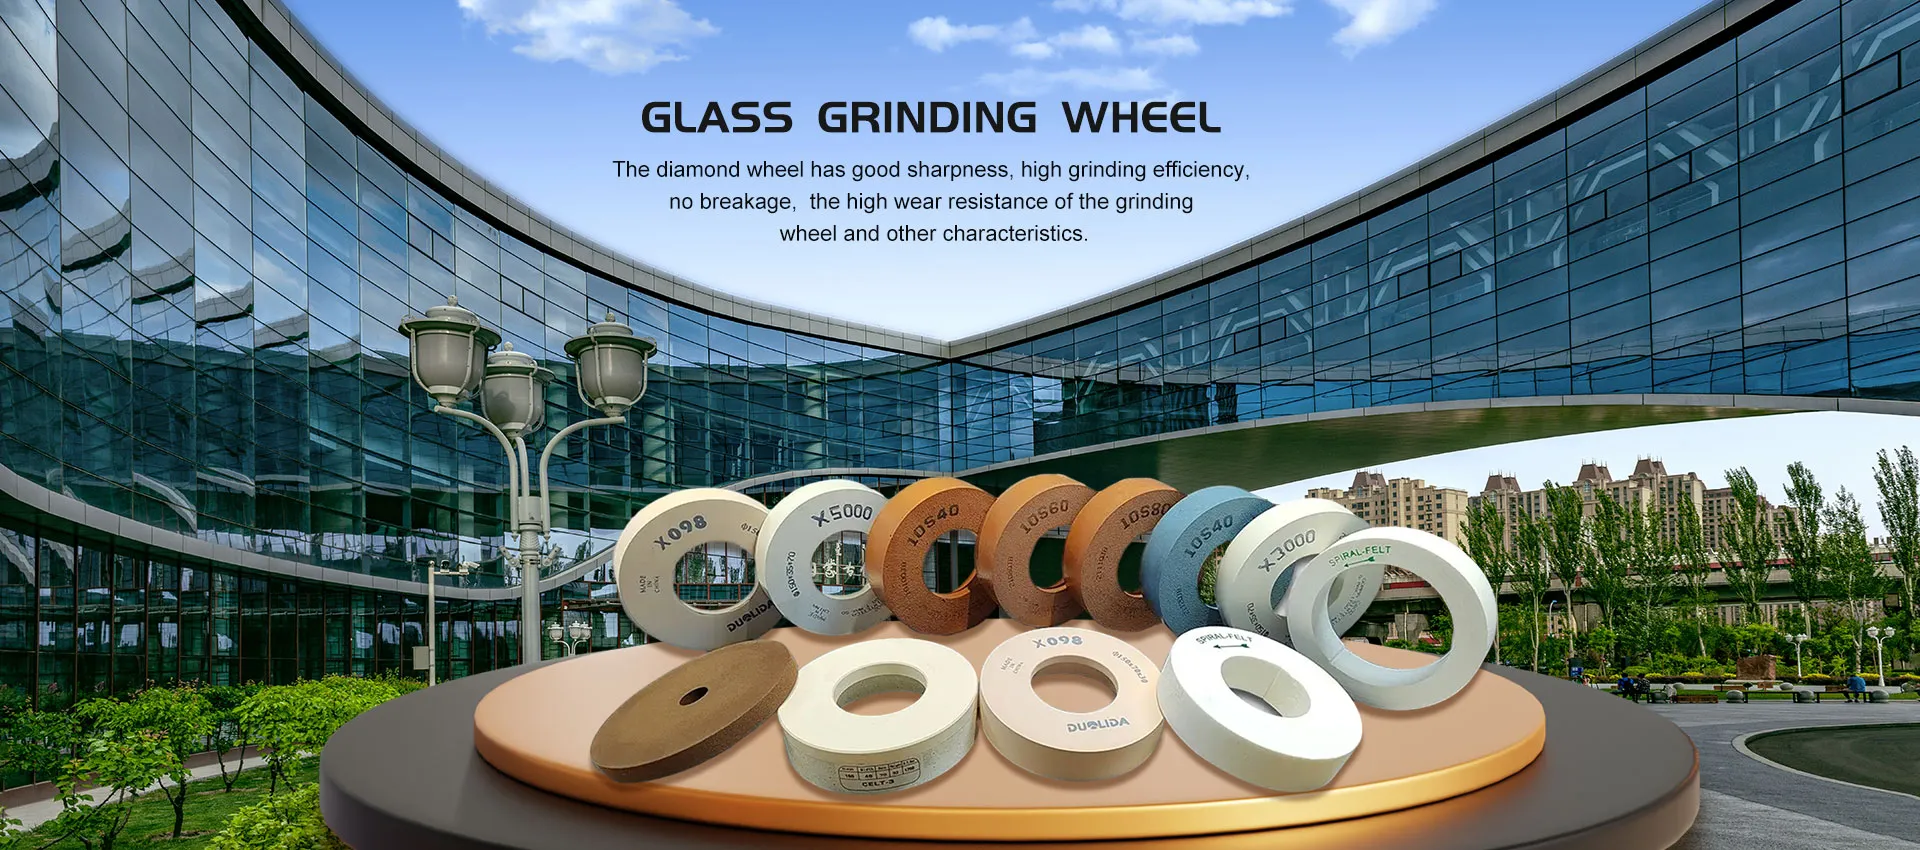 Supplier ng China Glass Grinding Wheel